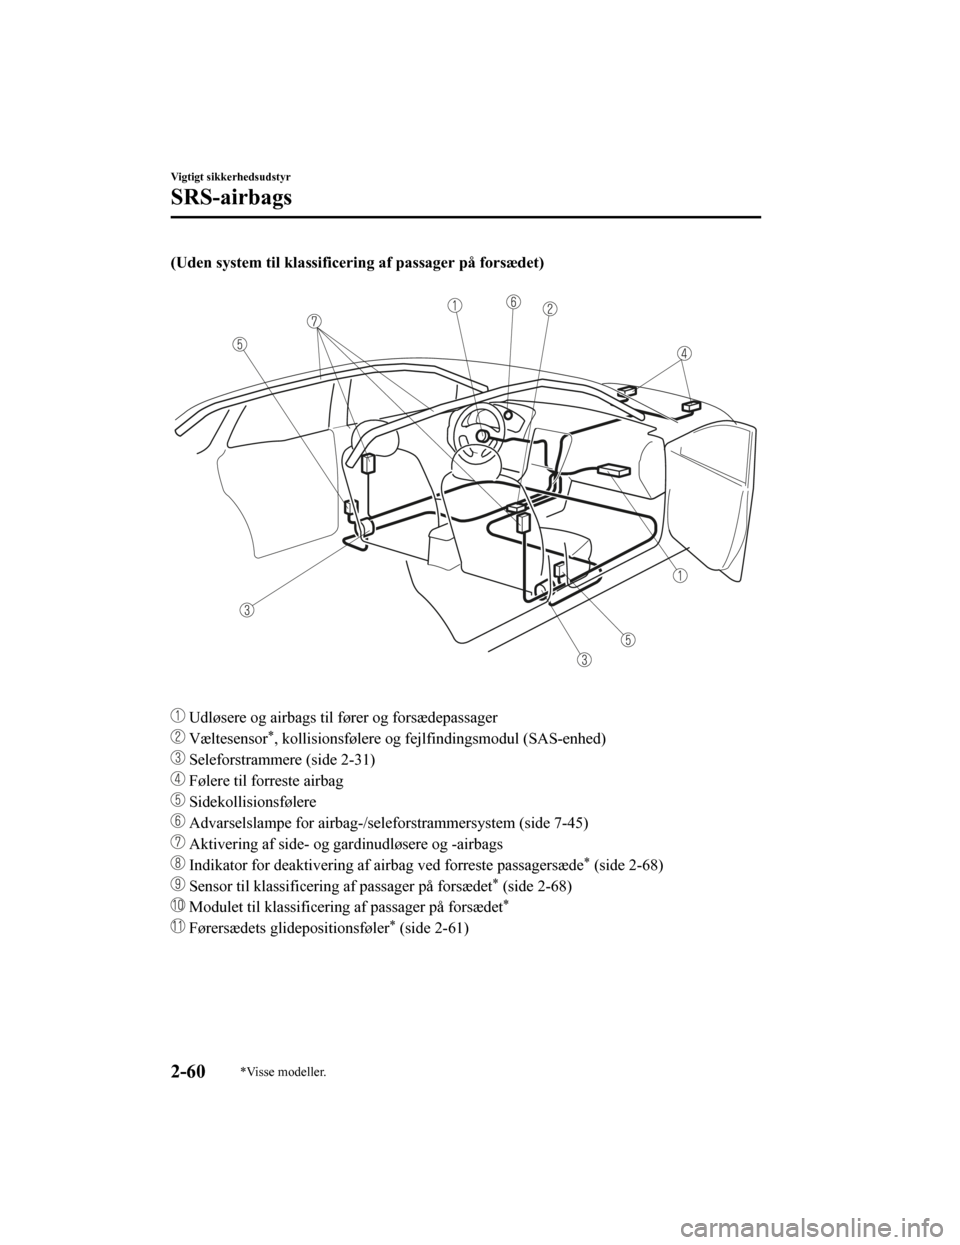 MAZDA MODEL CX-5 2019  Instruktionsbog (in Danish) (Uden system til klassificering af passager på forsædet)
 
 Udløsere og airbags til fører og forsædepassager
 Væltesensor*, kollisionsfølere og fej lfindingsmodul (SAS-enhed)
 Seleforstrammere 